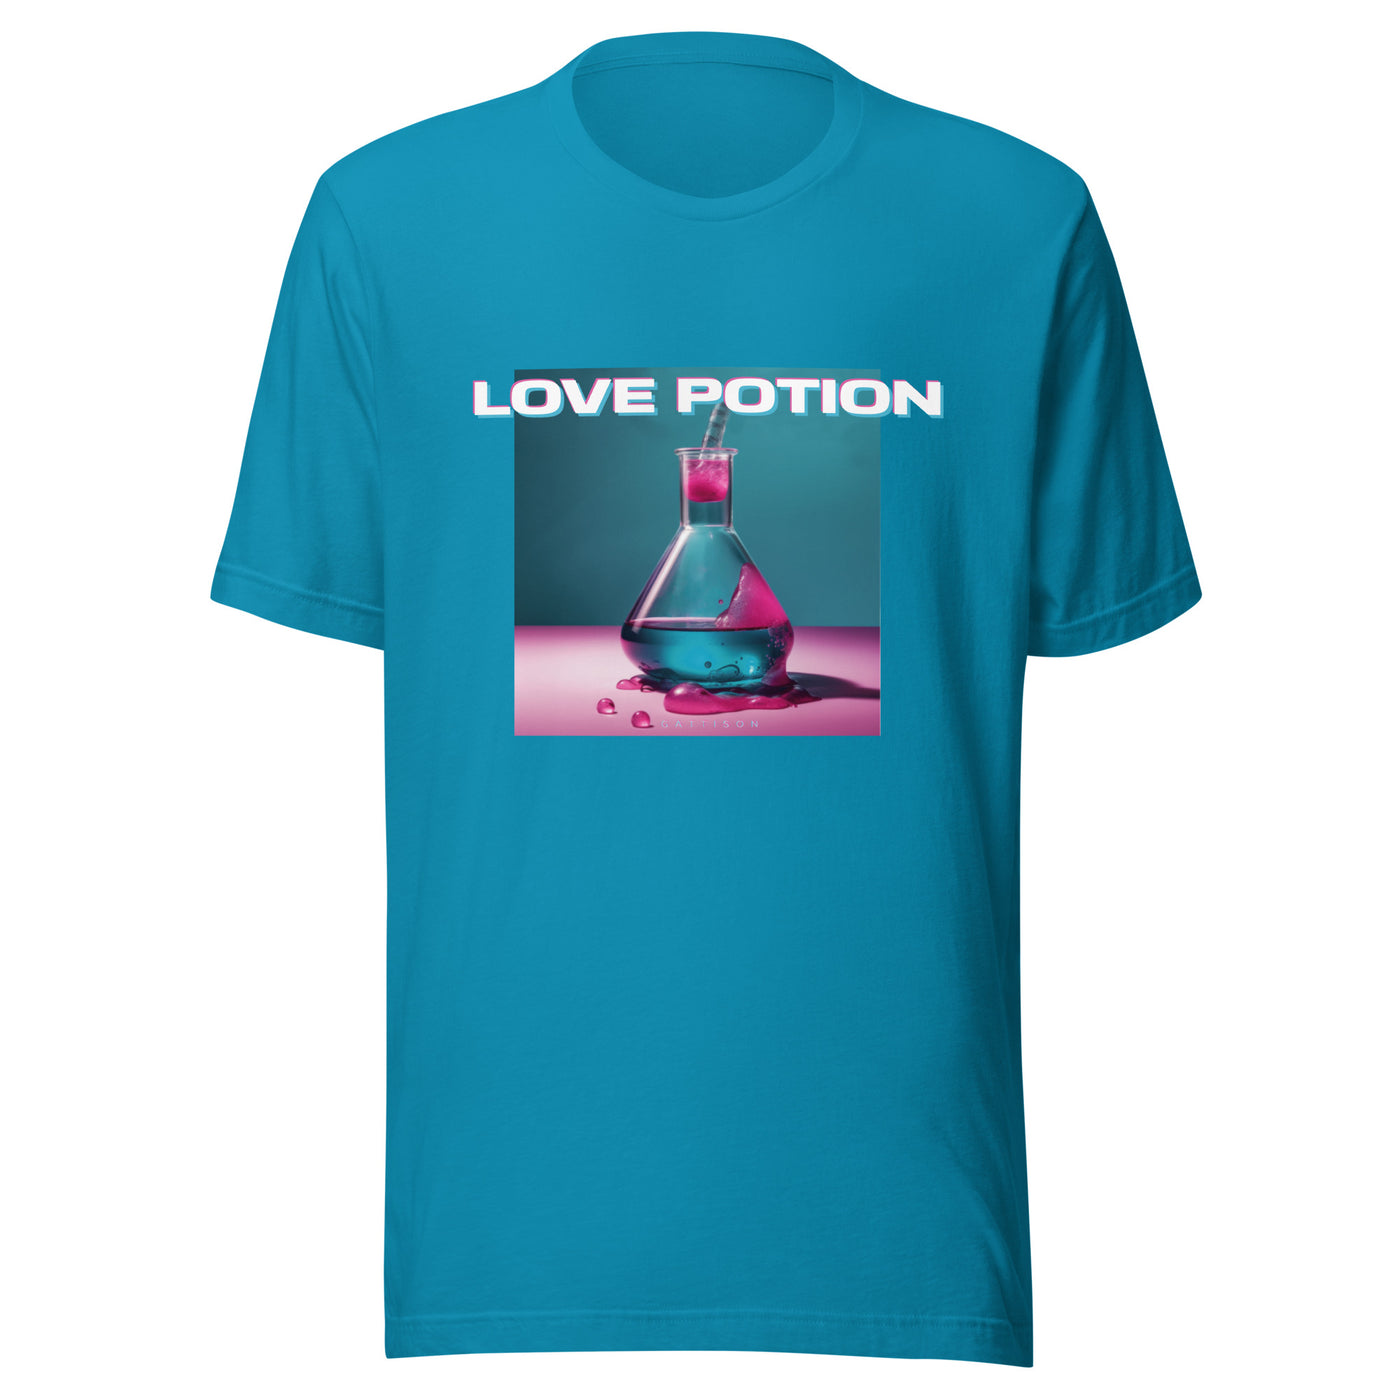 Love Potion Album T-Shirt // Unisex